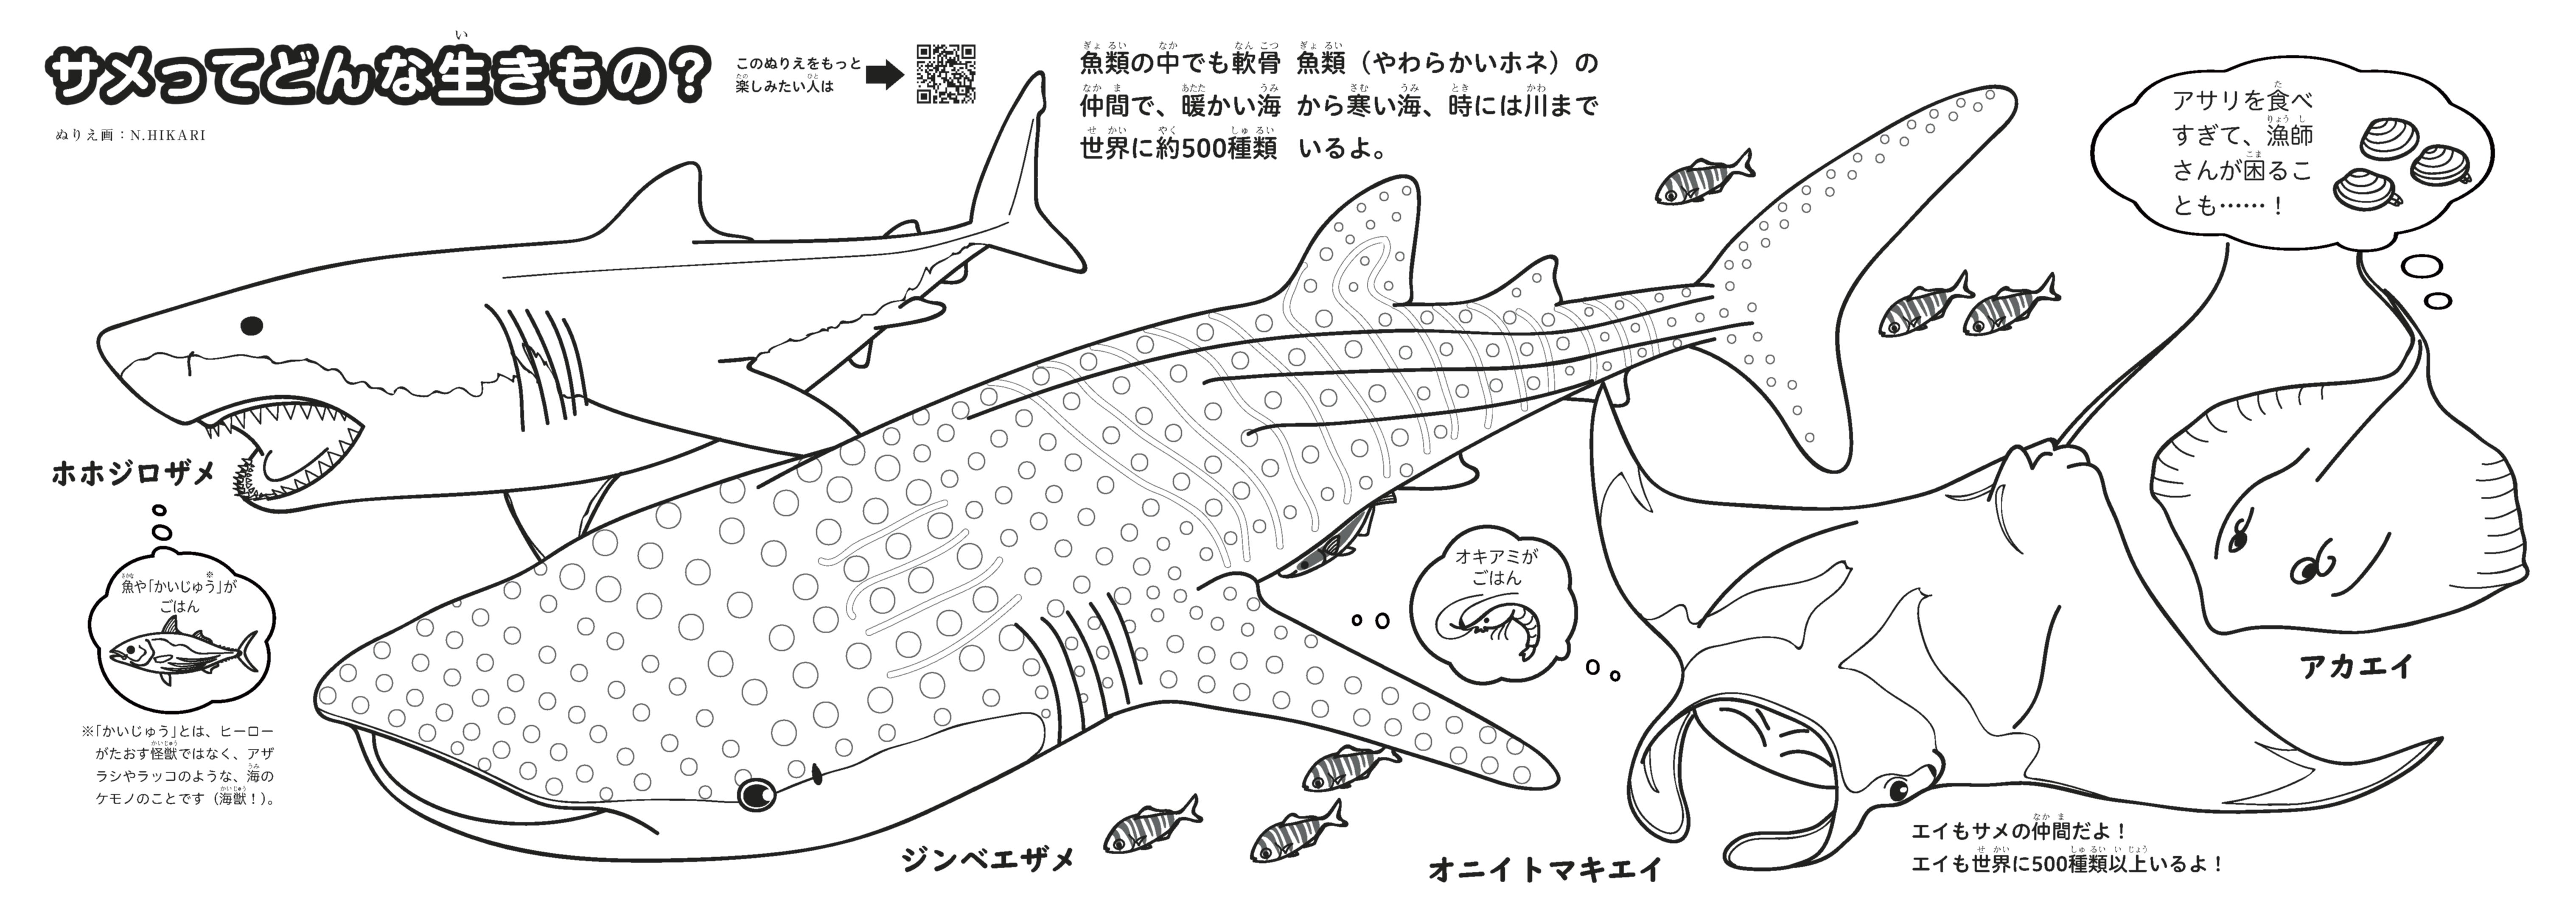 サメぬりえ 完成しました イラストもクール 魚食普及推進センター 一般社団法人 大日本水産会